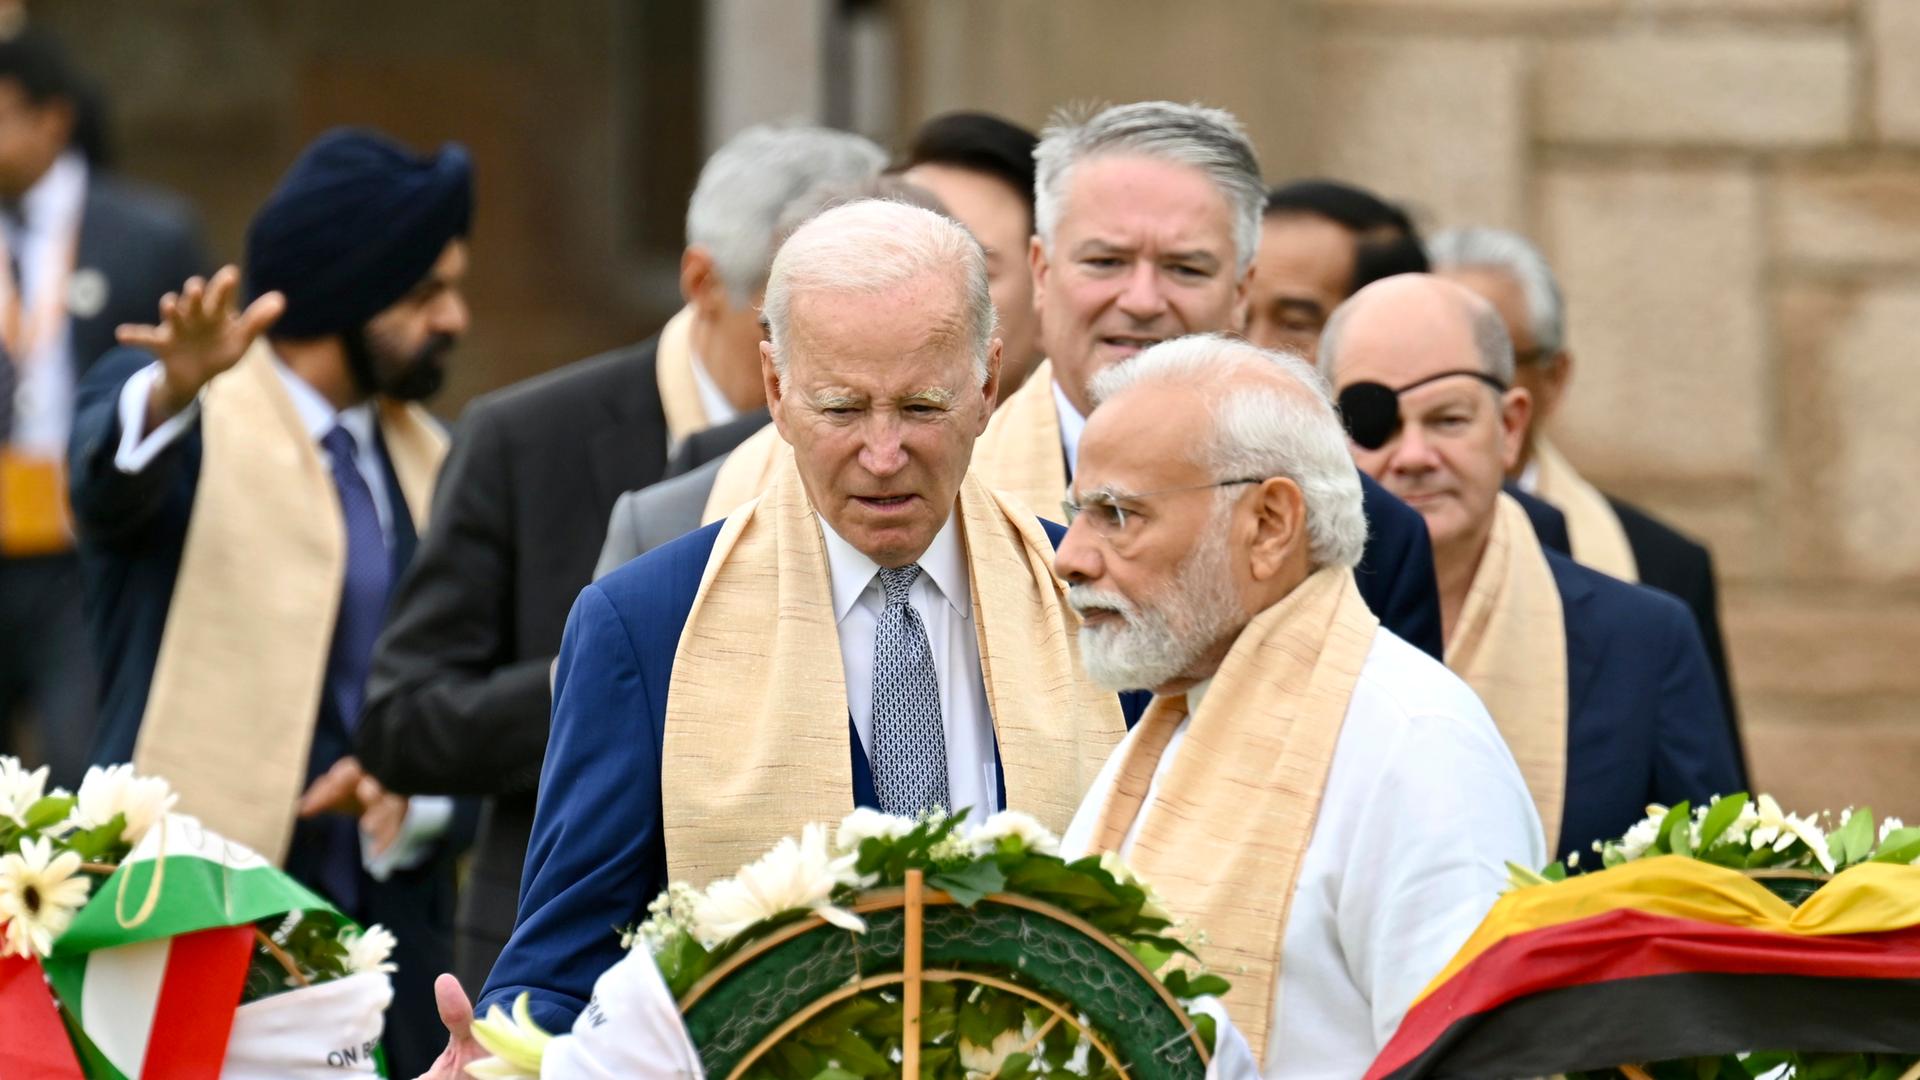 US-Präsident Joe Biden, Indiens Premierminister Narendra Modi, Bundeskanzler Olaf Scholz und andere Teilnehmer des G20-Gipfels am Sonntag beim Besuch des Mahatma Gandhi Memorials in Neu-Delhi